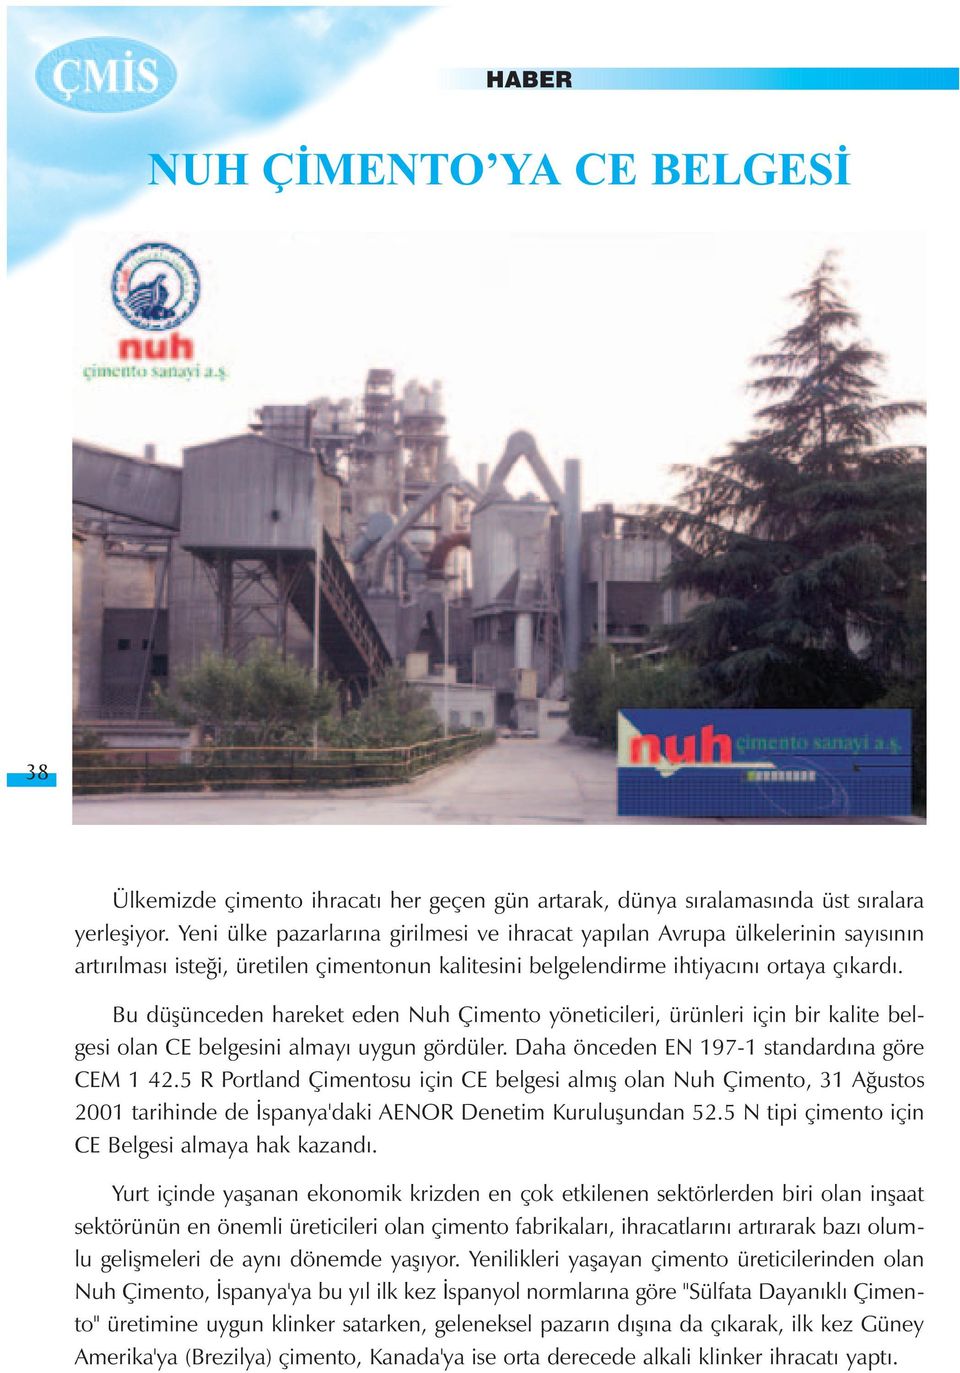 Bu düþünceden hareket eden Nuh Çimento yöneticileri, ürünleri için bir kalite belgesi olan CE belgesini almayý uygun gördüler. Daha önceden EN 197-1 standardýna göre CEM 1 42.